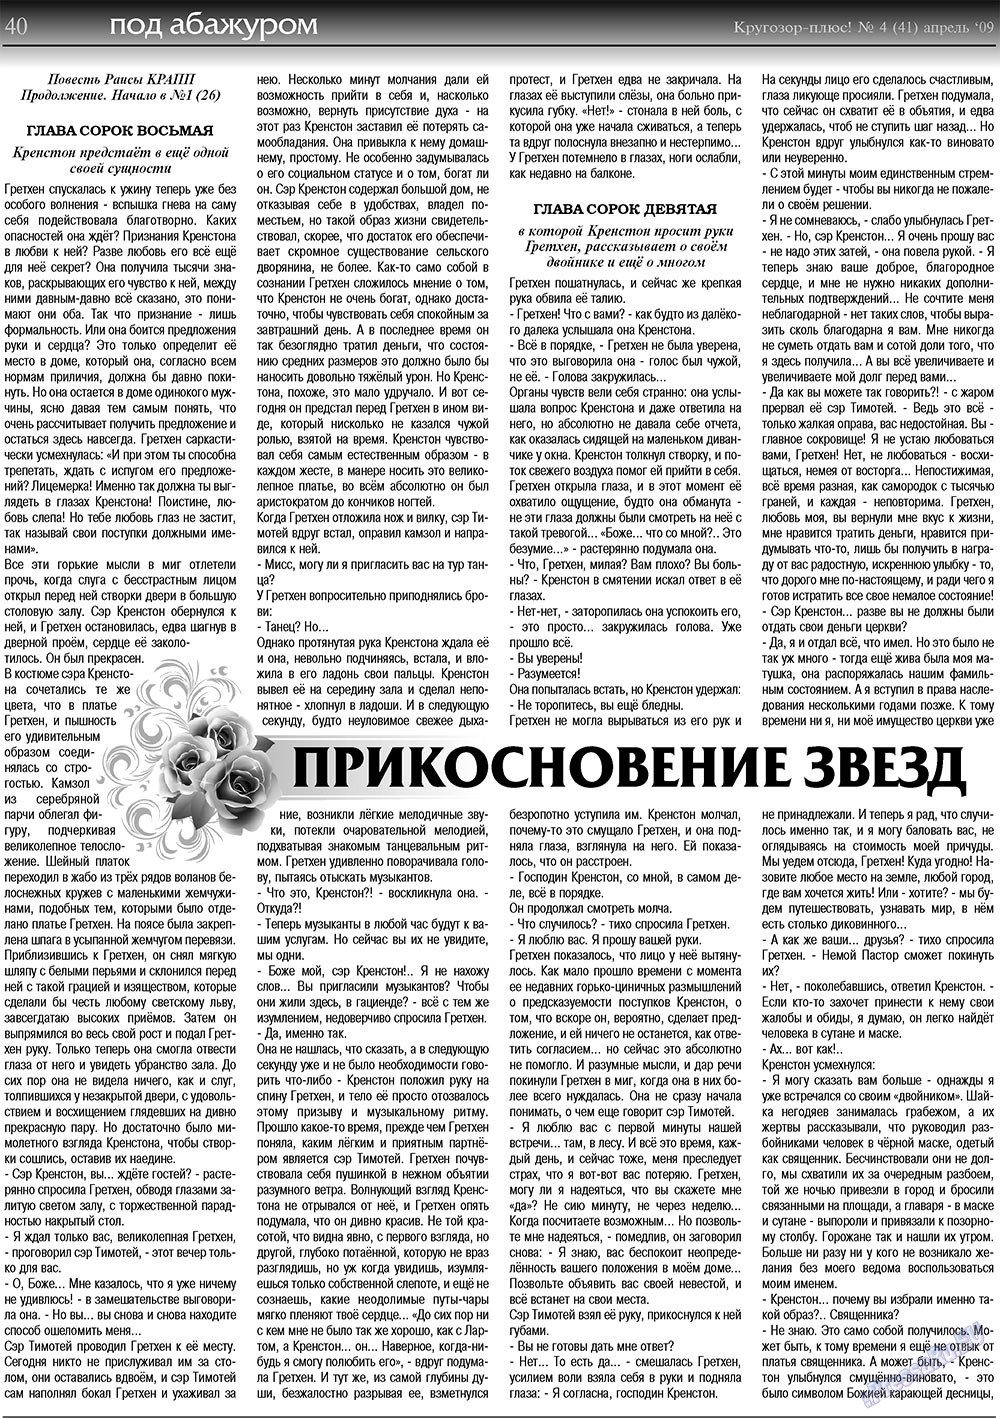 Кругозор плюс!, газета. 2009 №4 стр.40